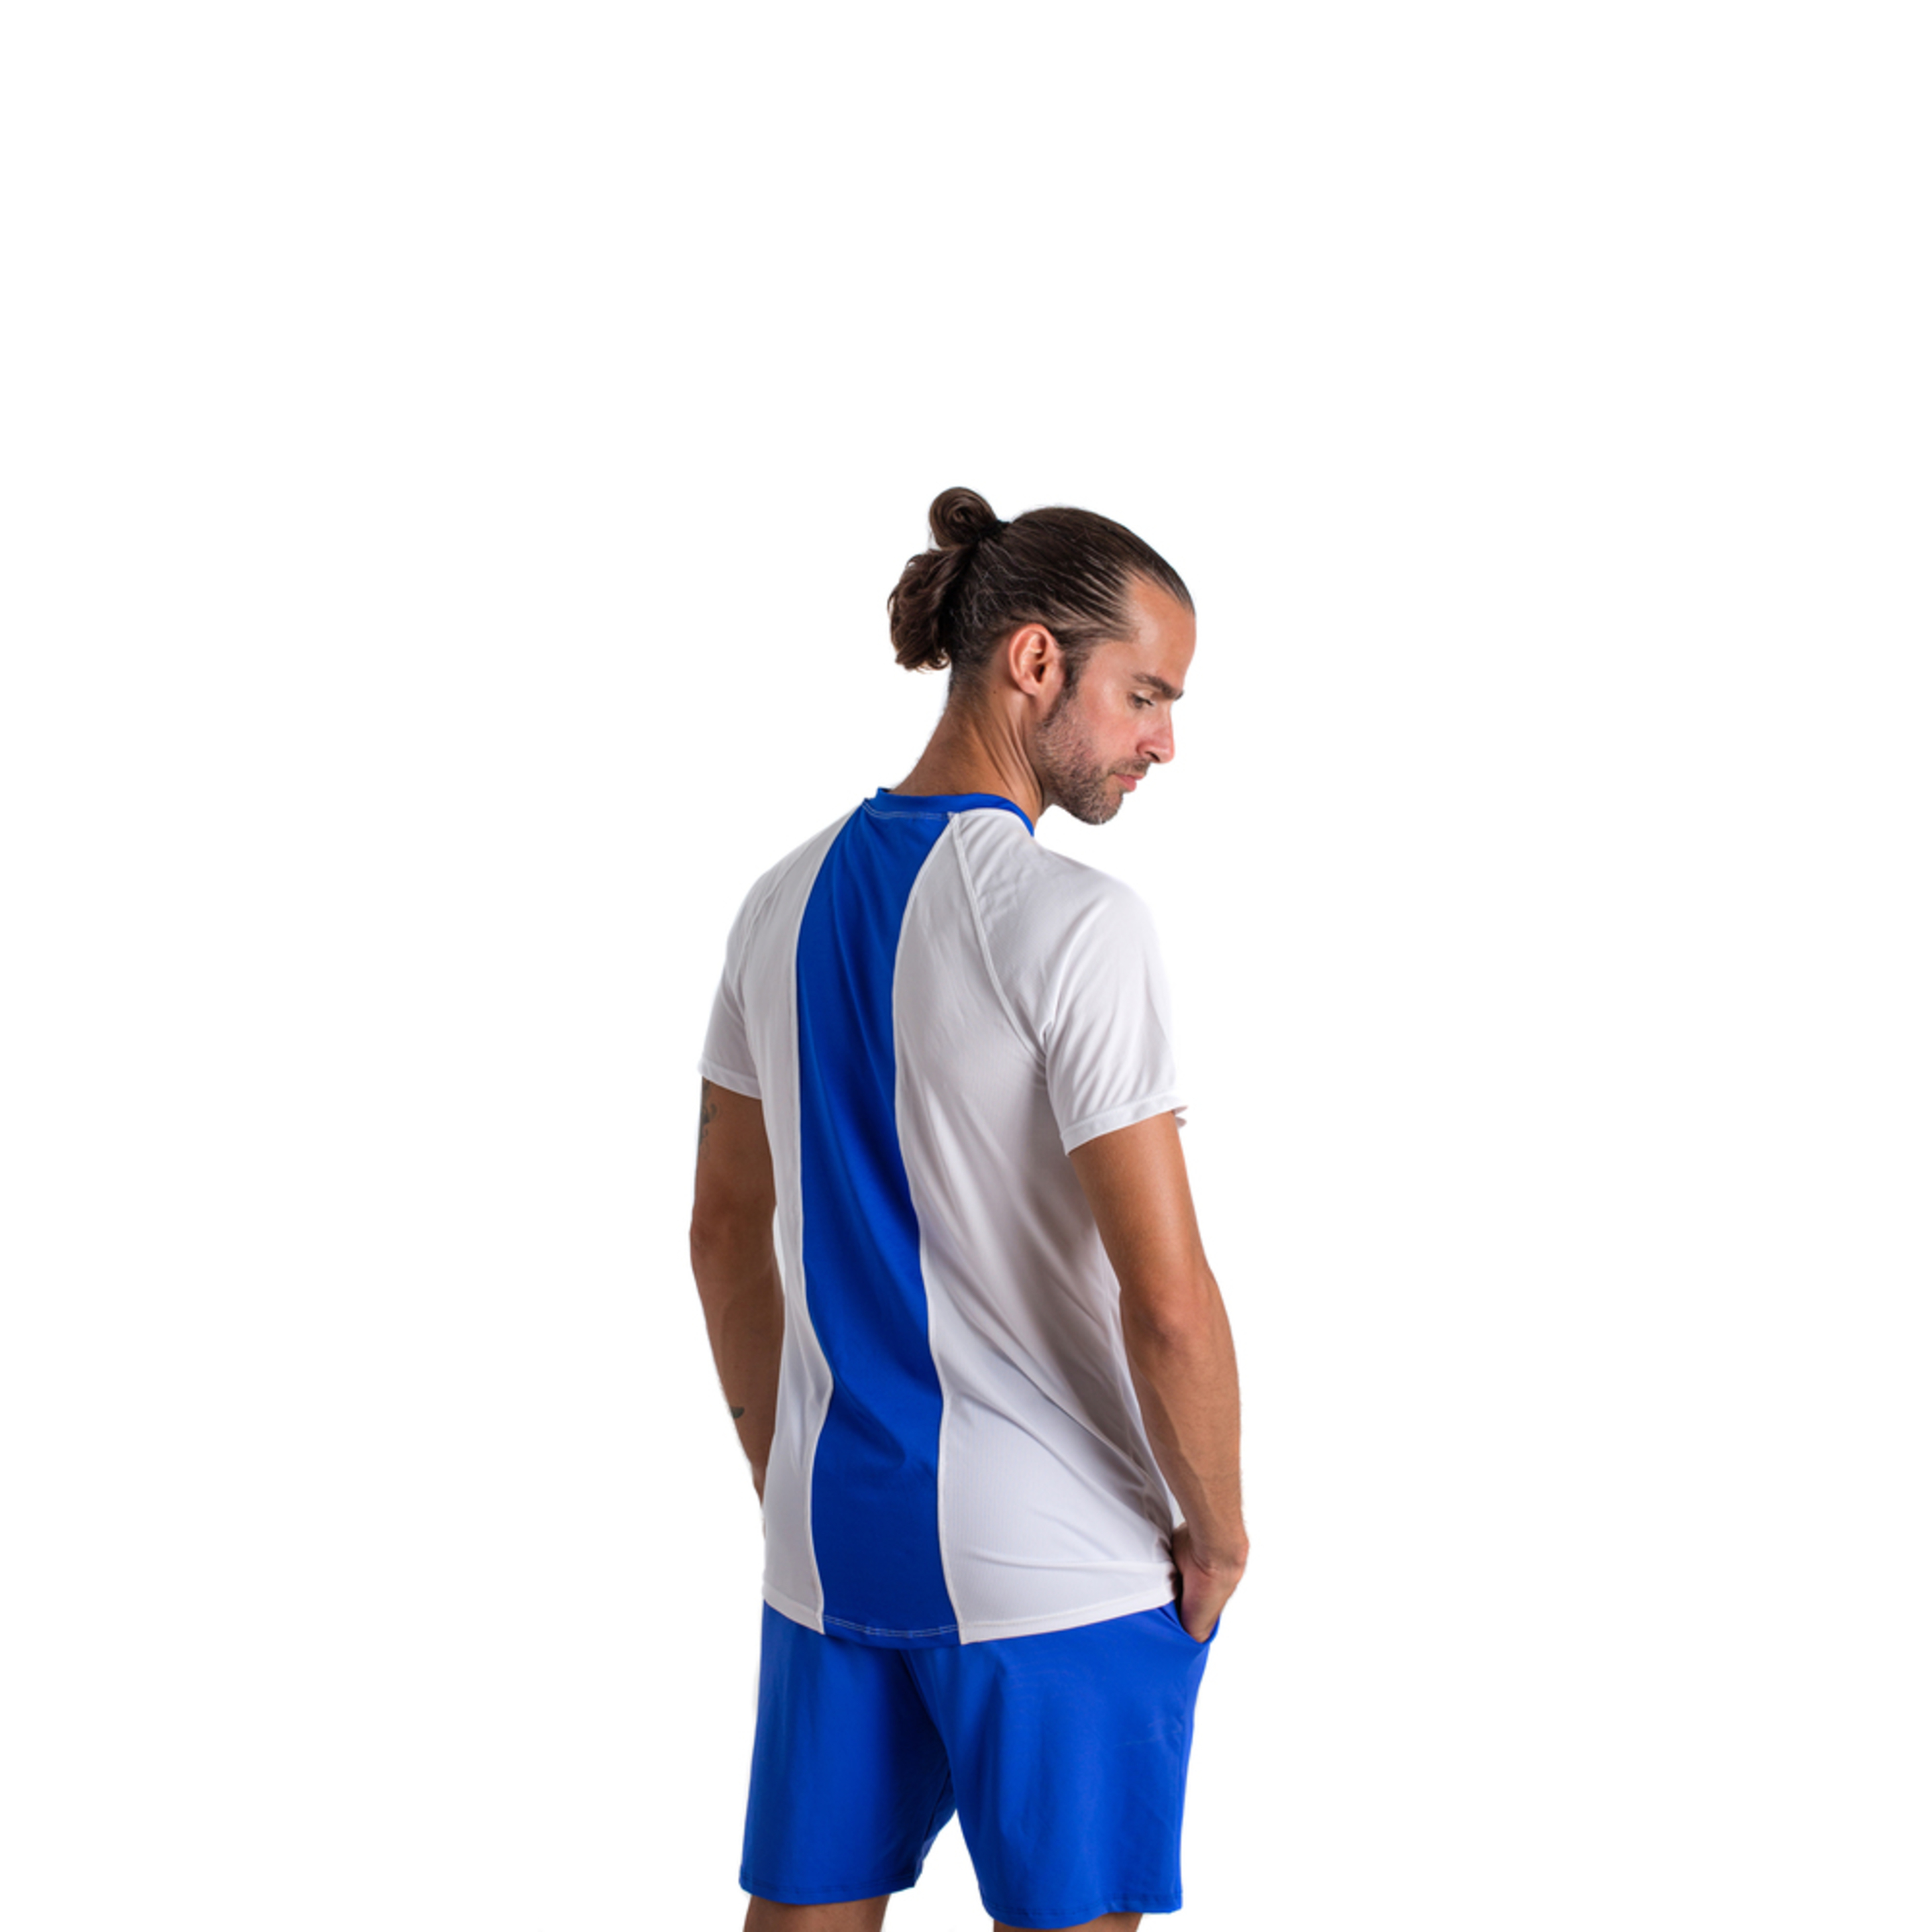 Camiseta De Pádel Y Tenis Bb By Belénberbel Marx - Blanco/Azul - Ropa Deportiva Hombre  MKP